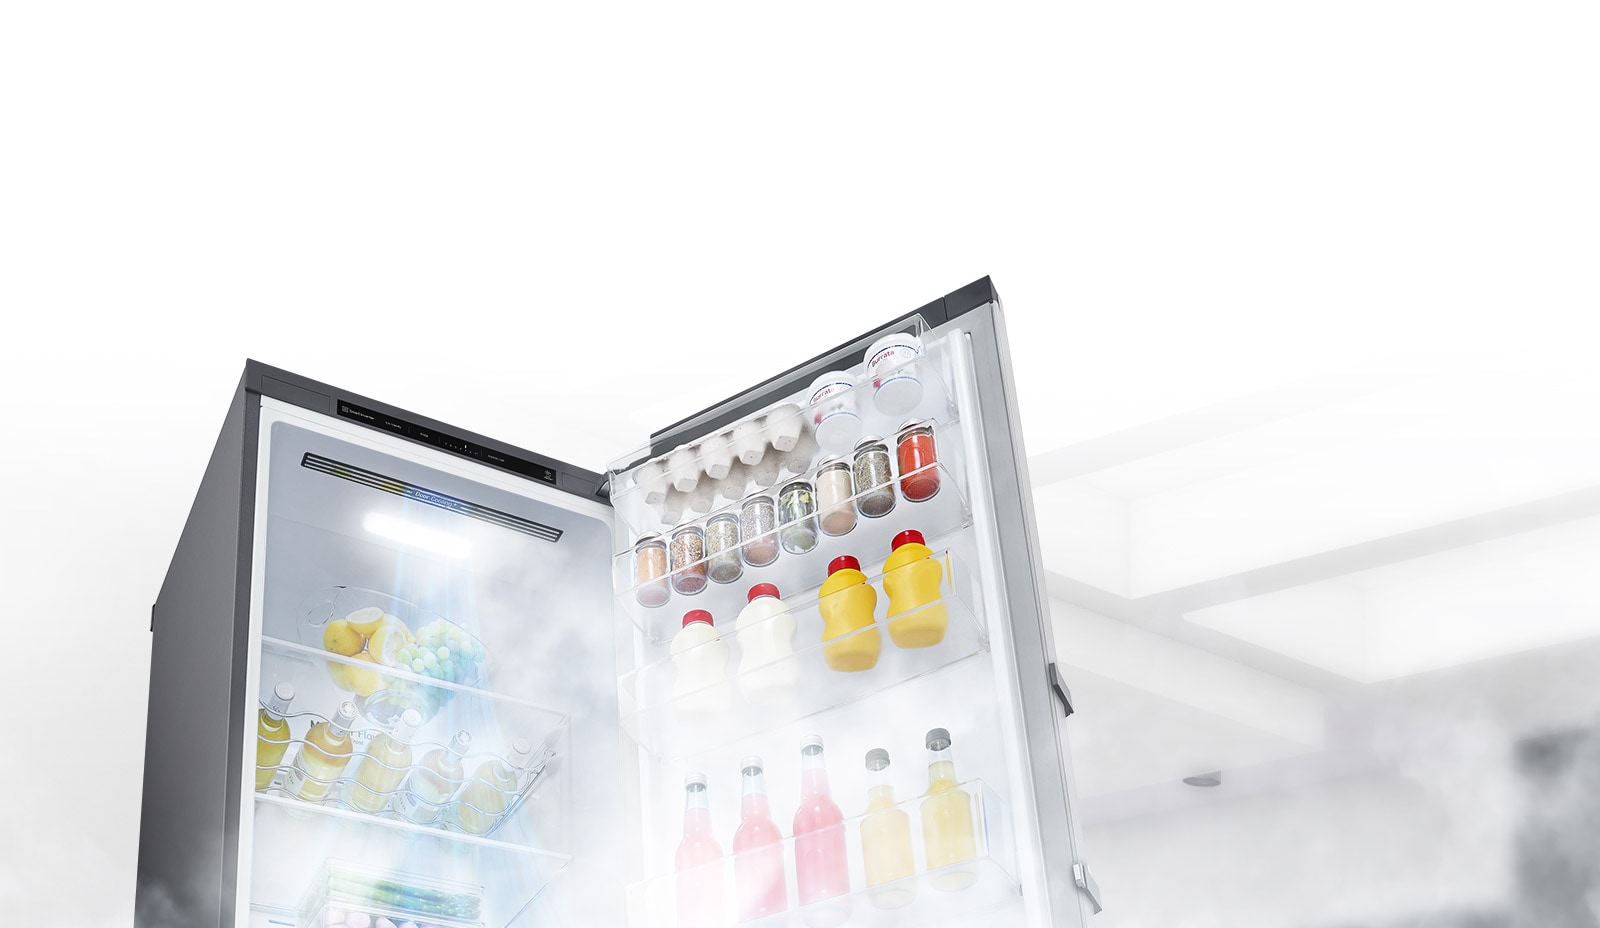 A hűtőszekrény nyitott ajtóval kissé oldalsó szögből látható, telepakolva élelmiszerekkel. Fehér levegő áramlik az ételekre a hűtő belsejében felülről lefelé hidegen tartva azokat.